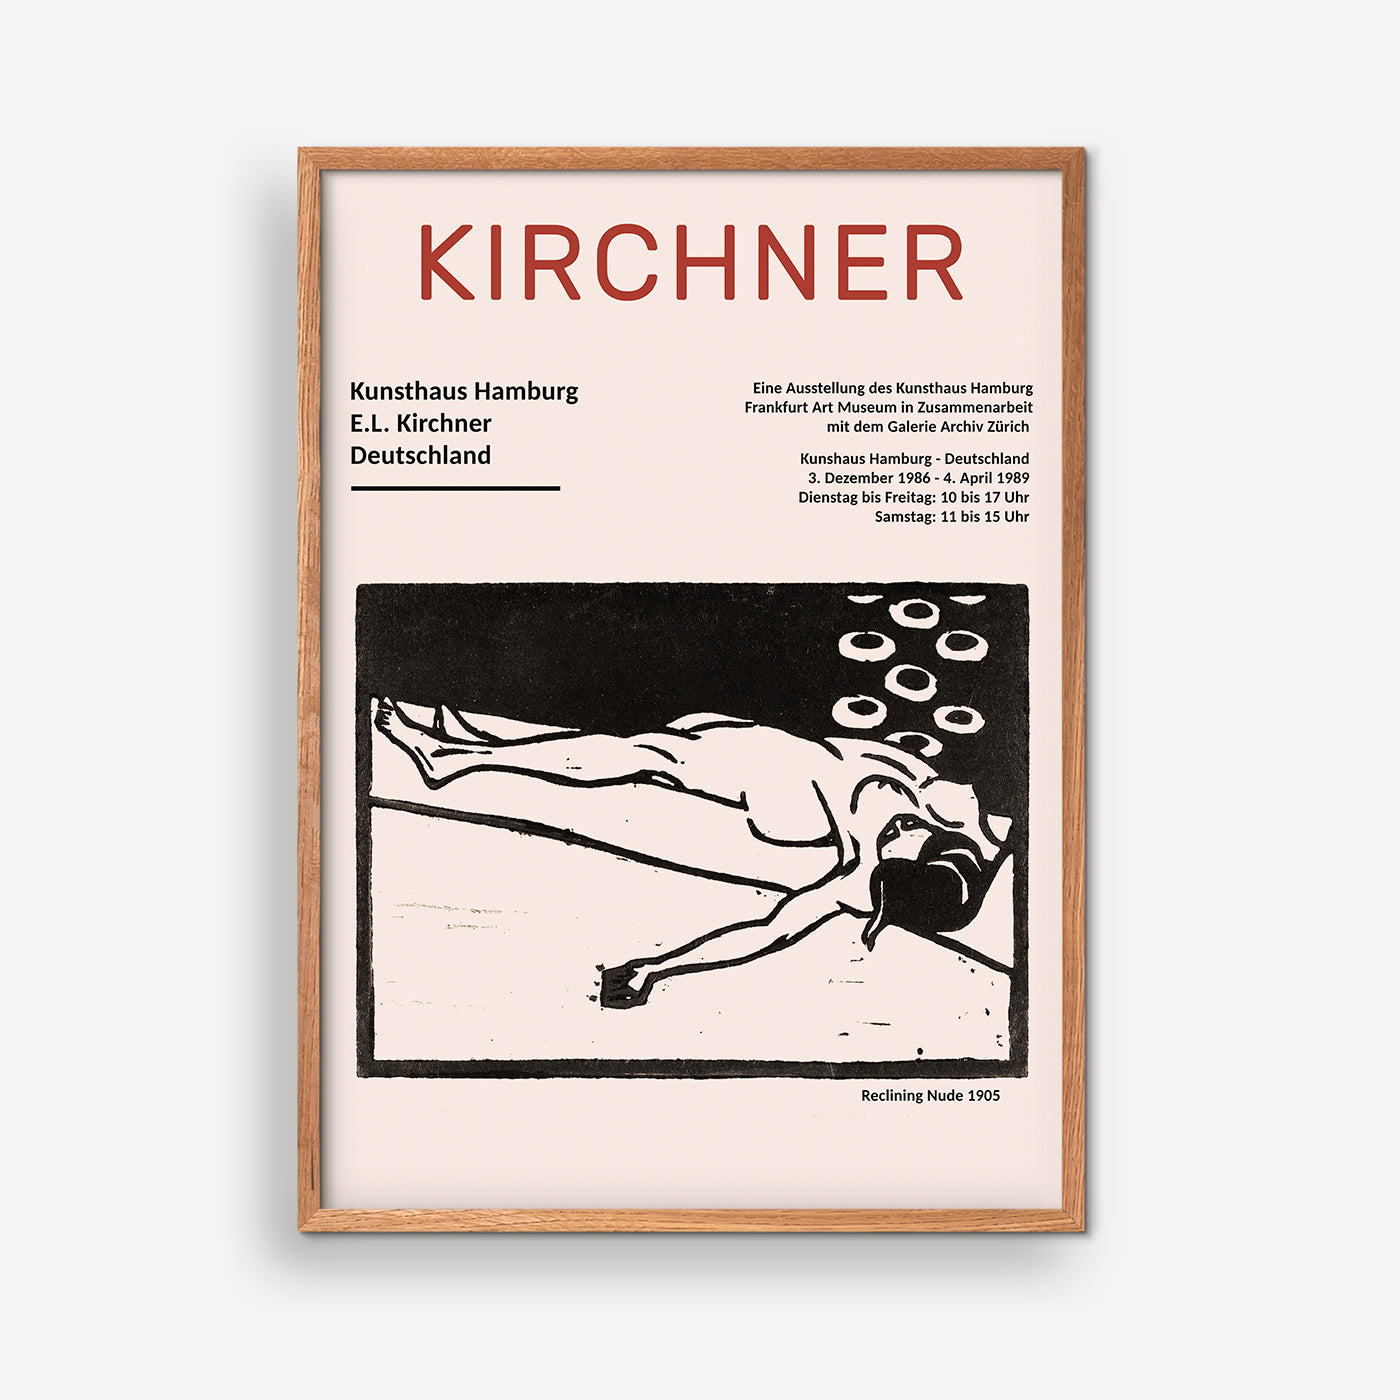 Liegender Akt 1905 - Ernst Ludwig Kirchner